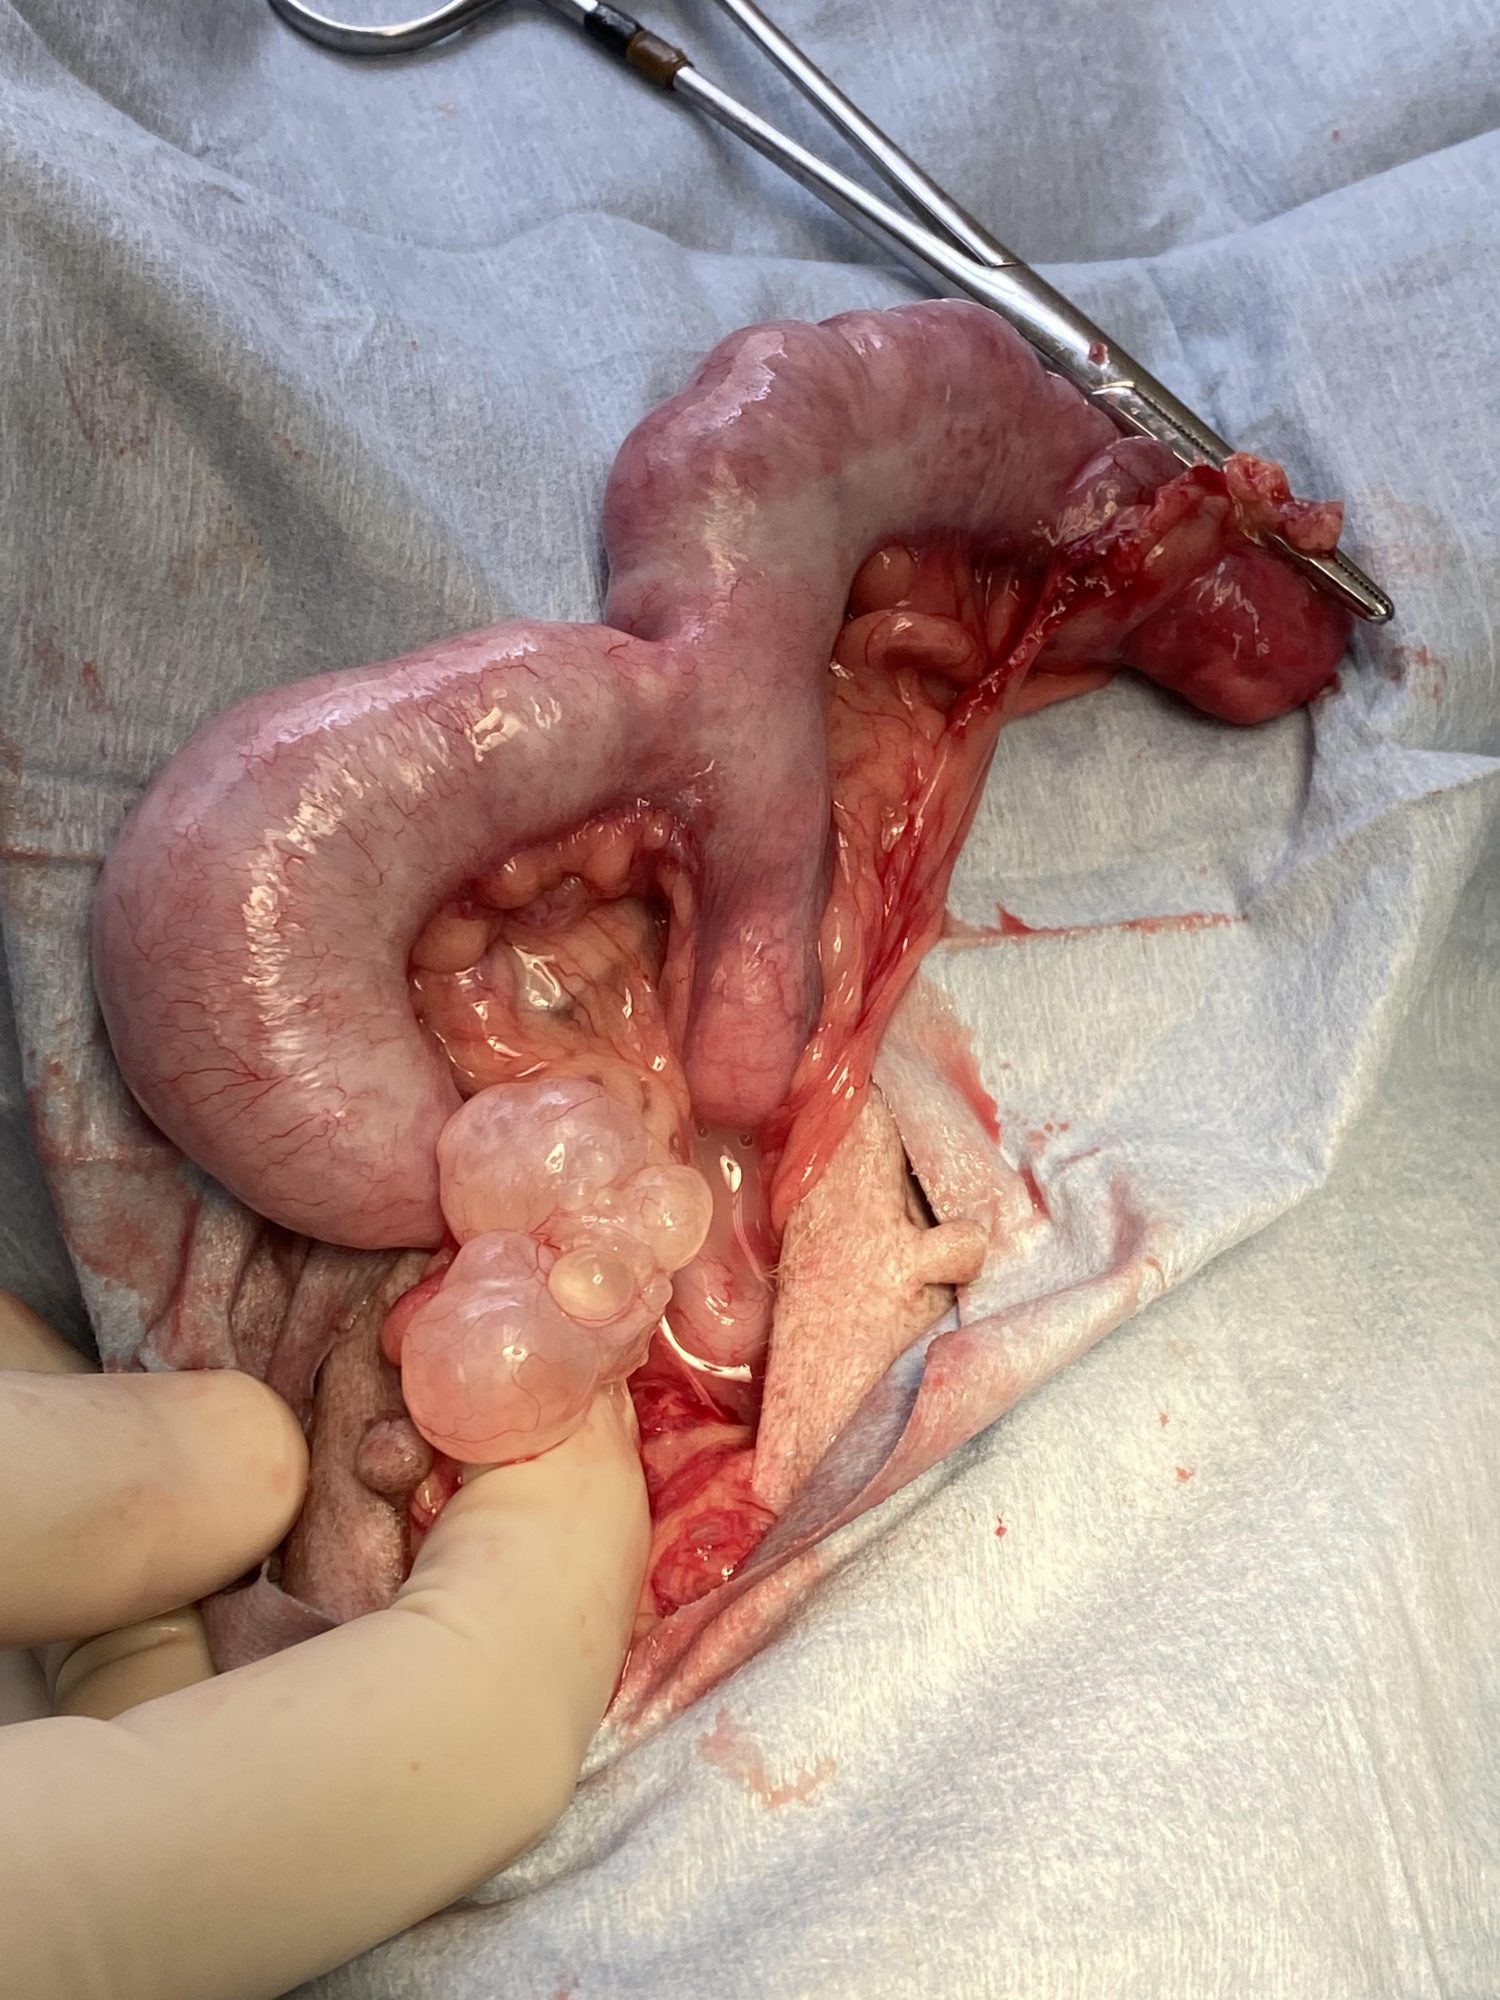 An ovarian surgery